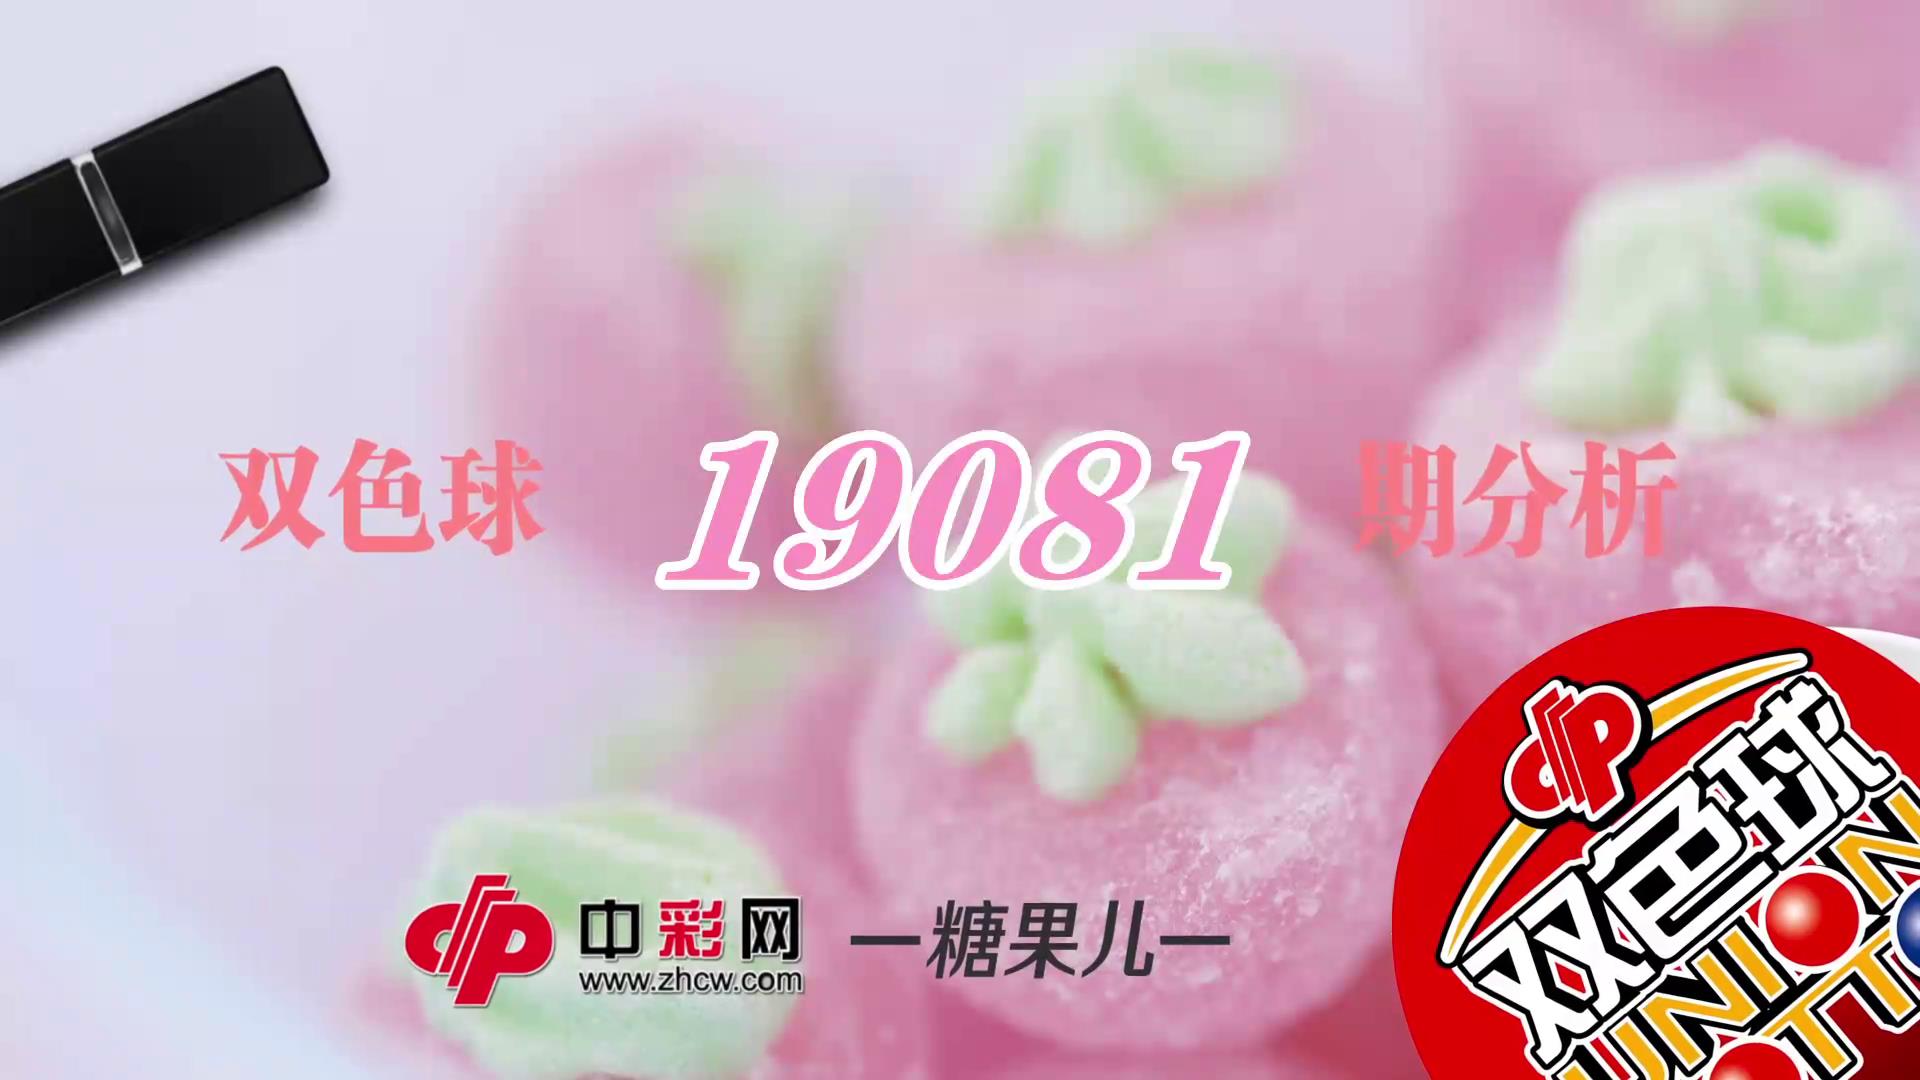 【中彩视频】糖果儿双色球第19081期